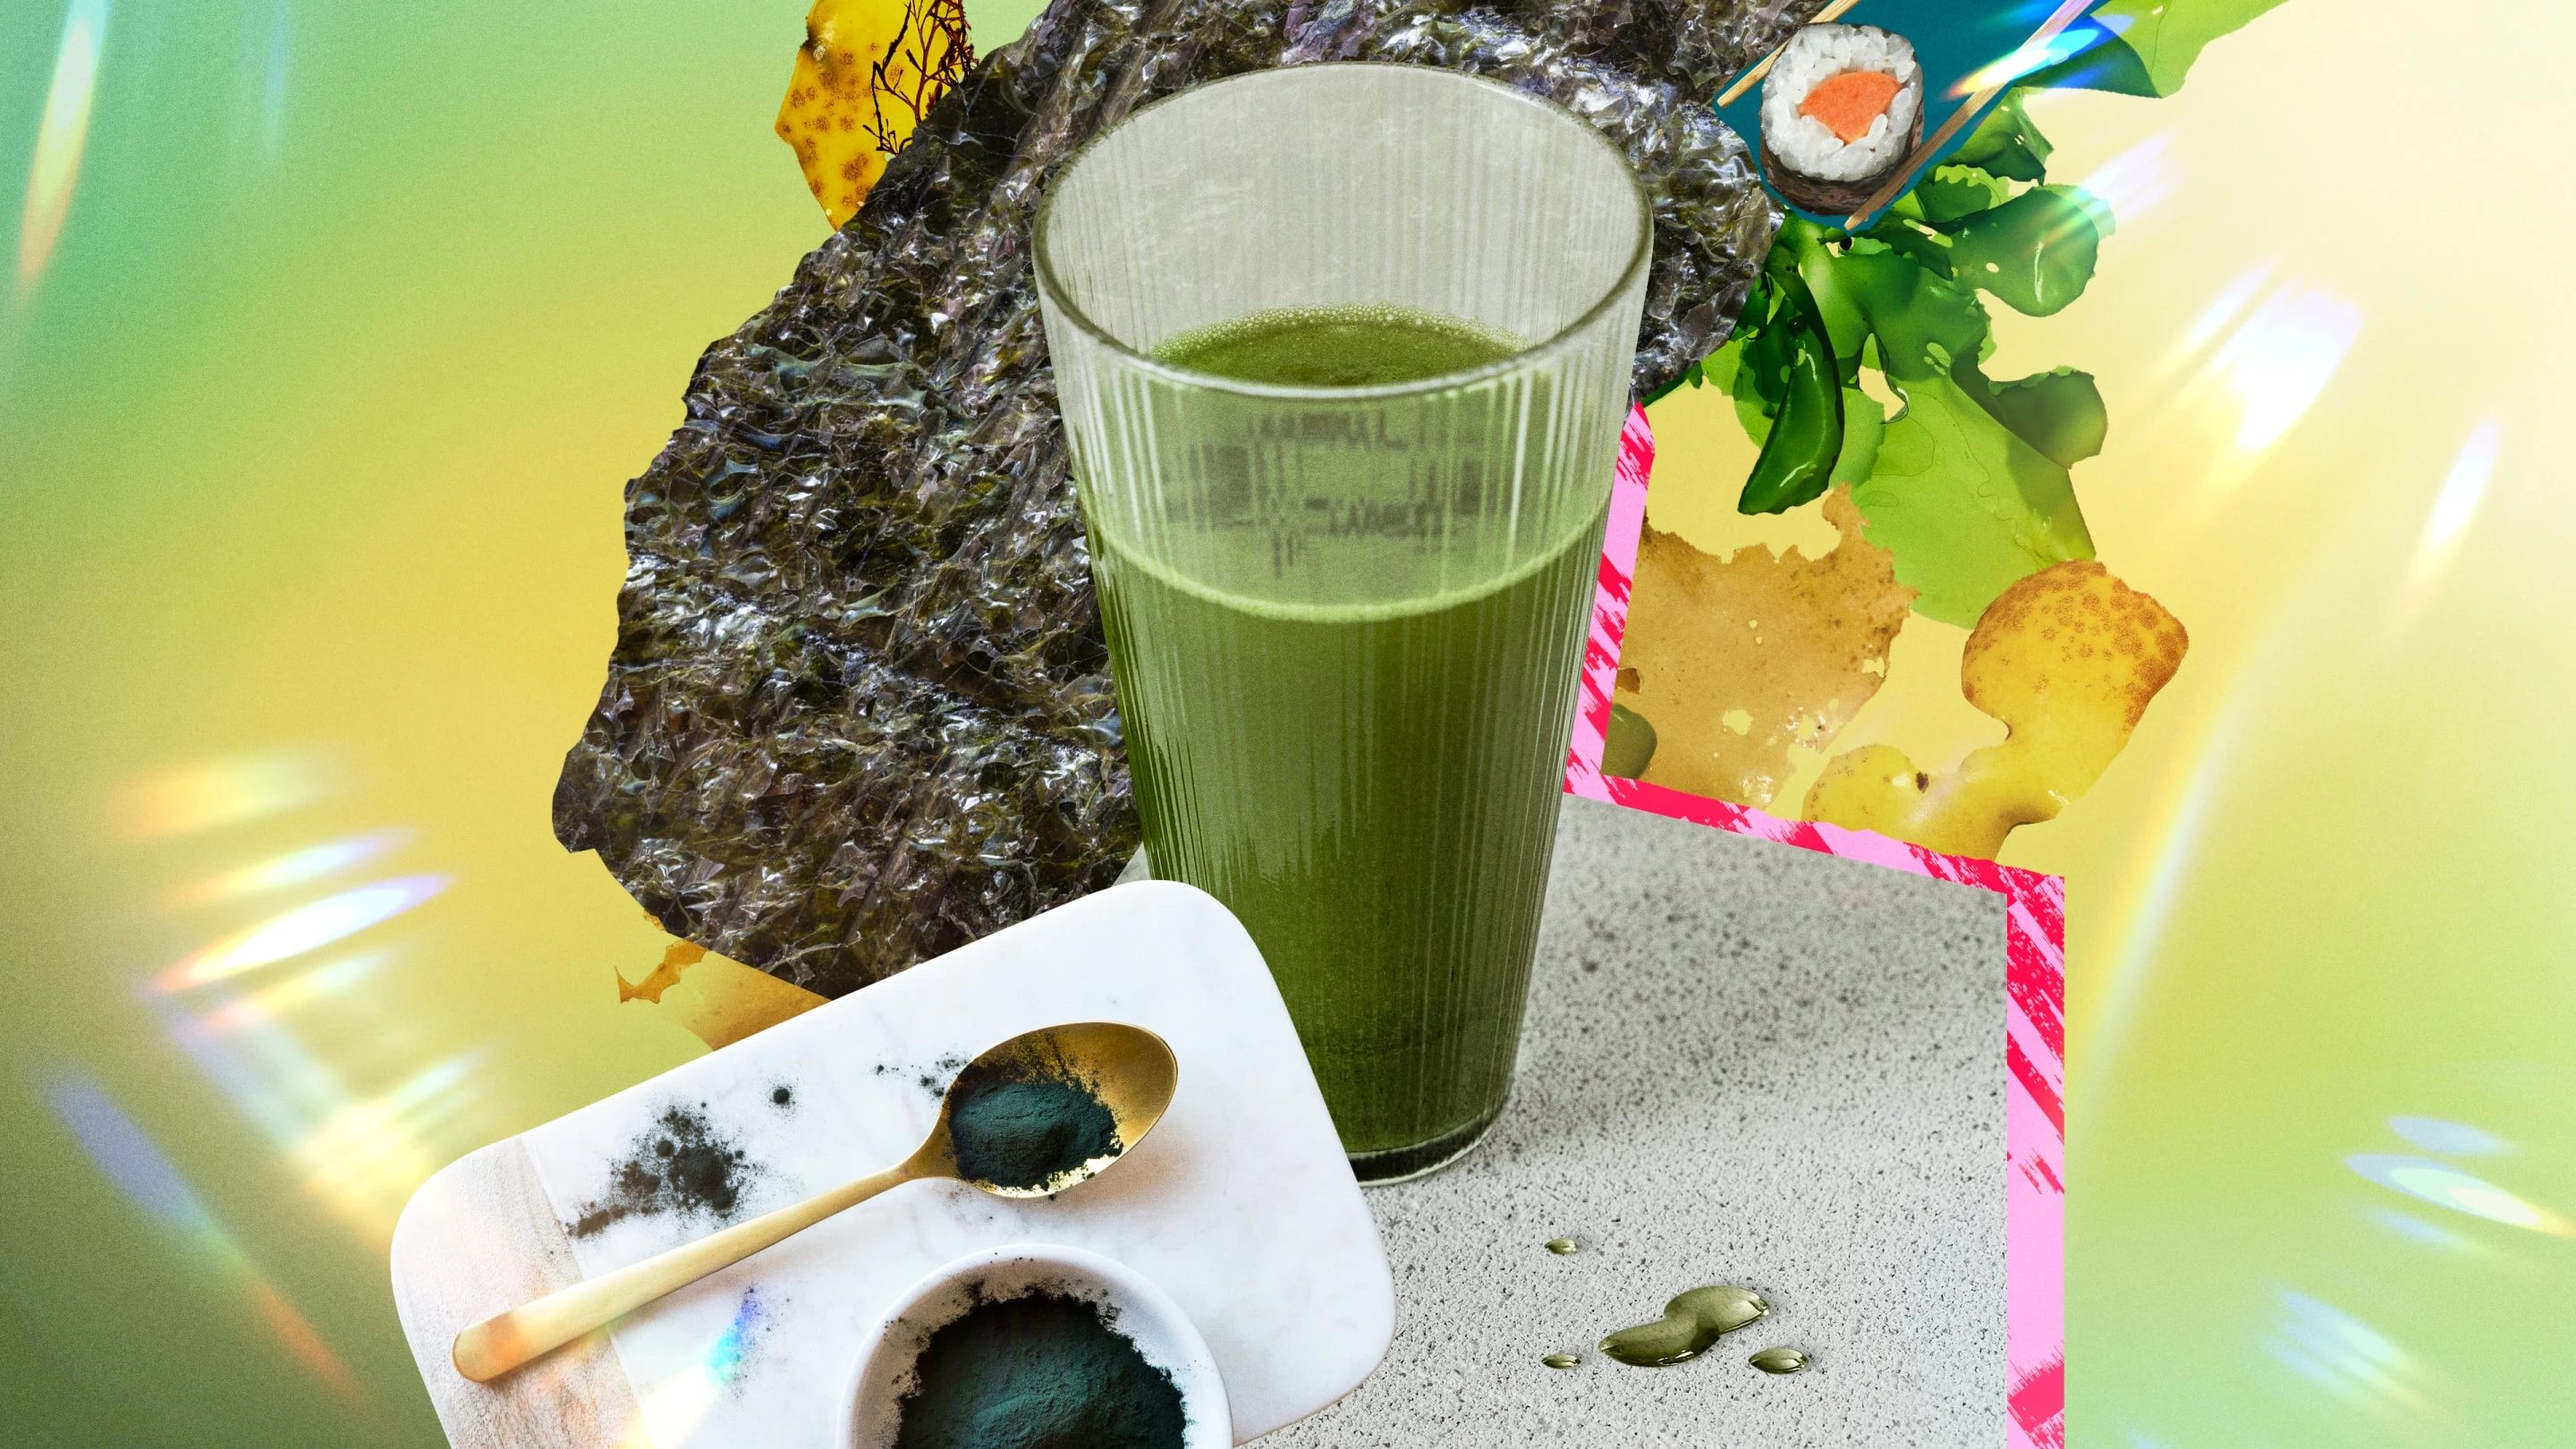 Jugo verde en un vaso, centrado entre un collage de artículos relacionados con las algas, como sushi, algas en polvo, palillos y algas cocinadas.